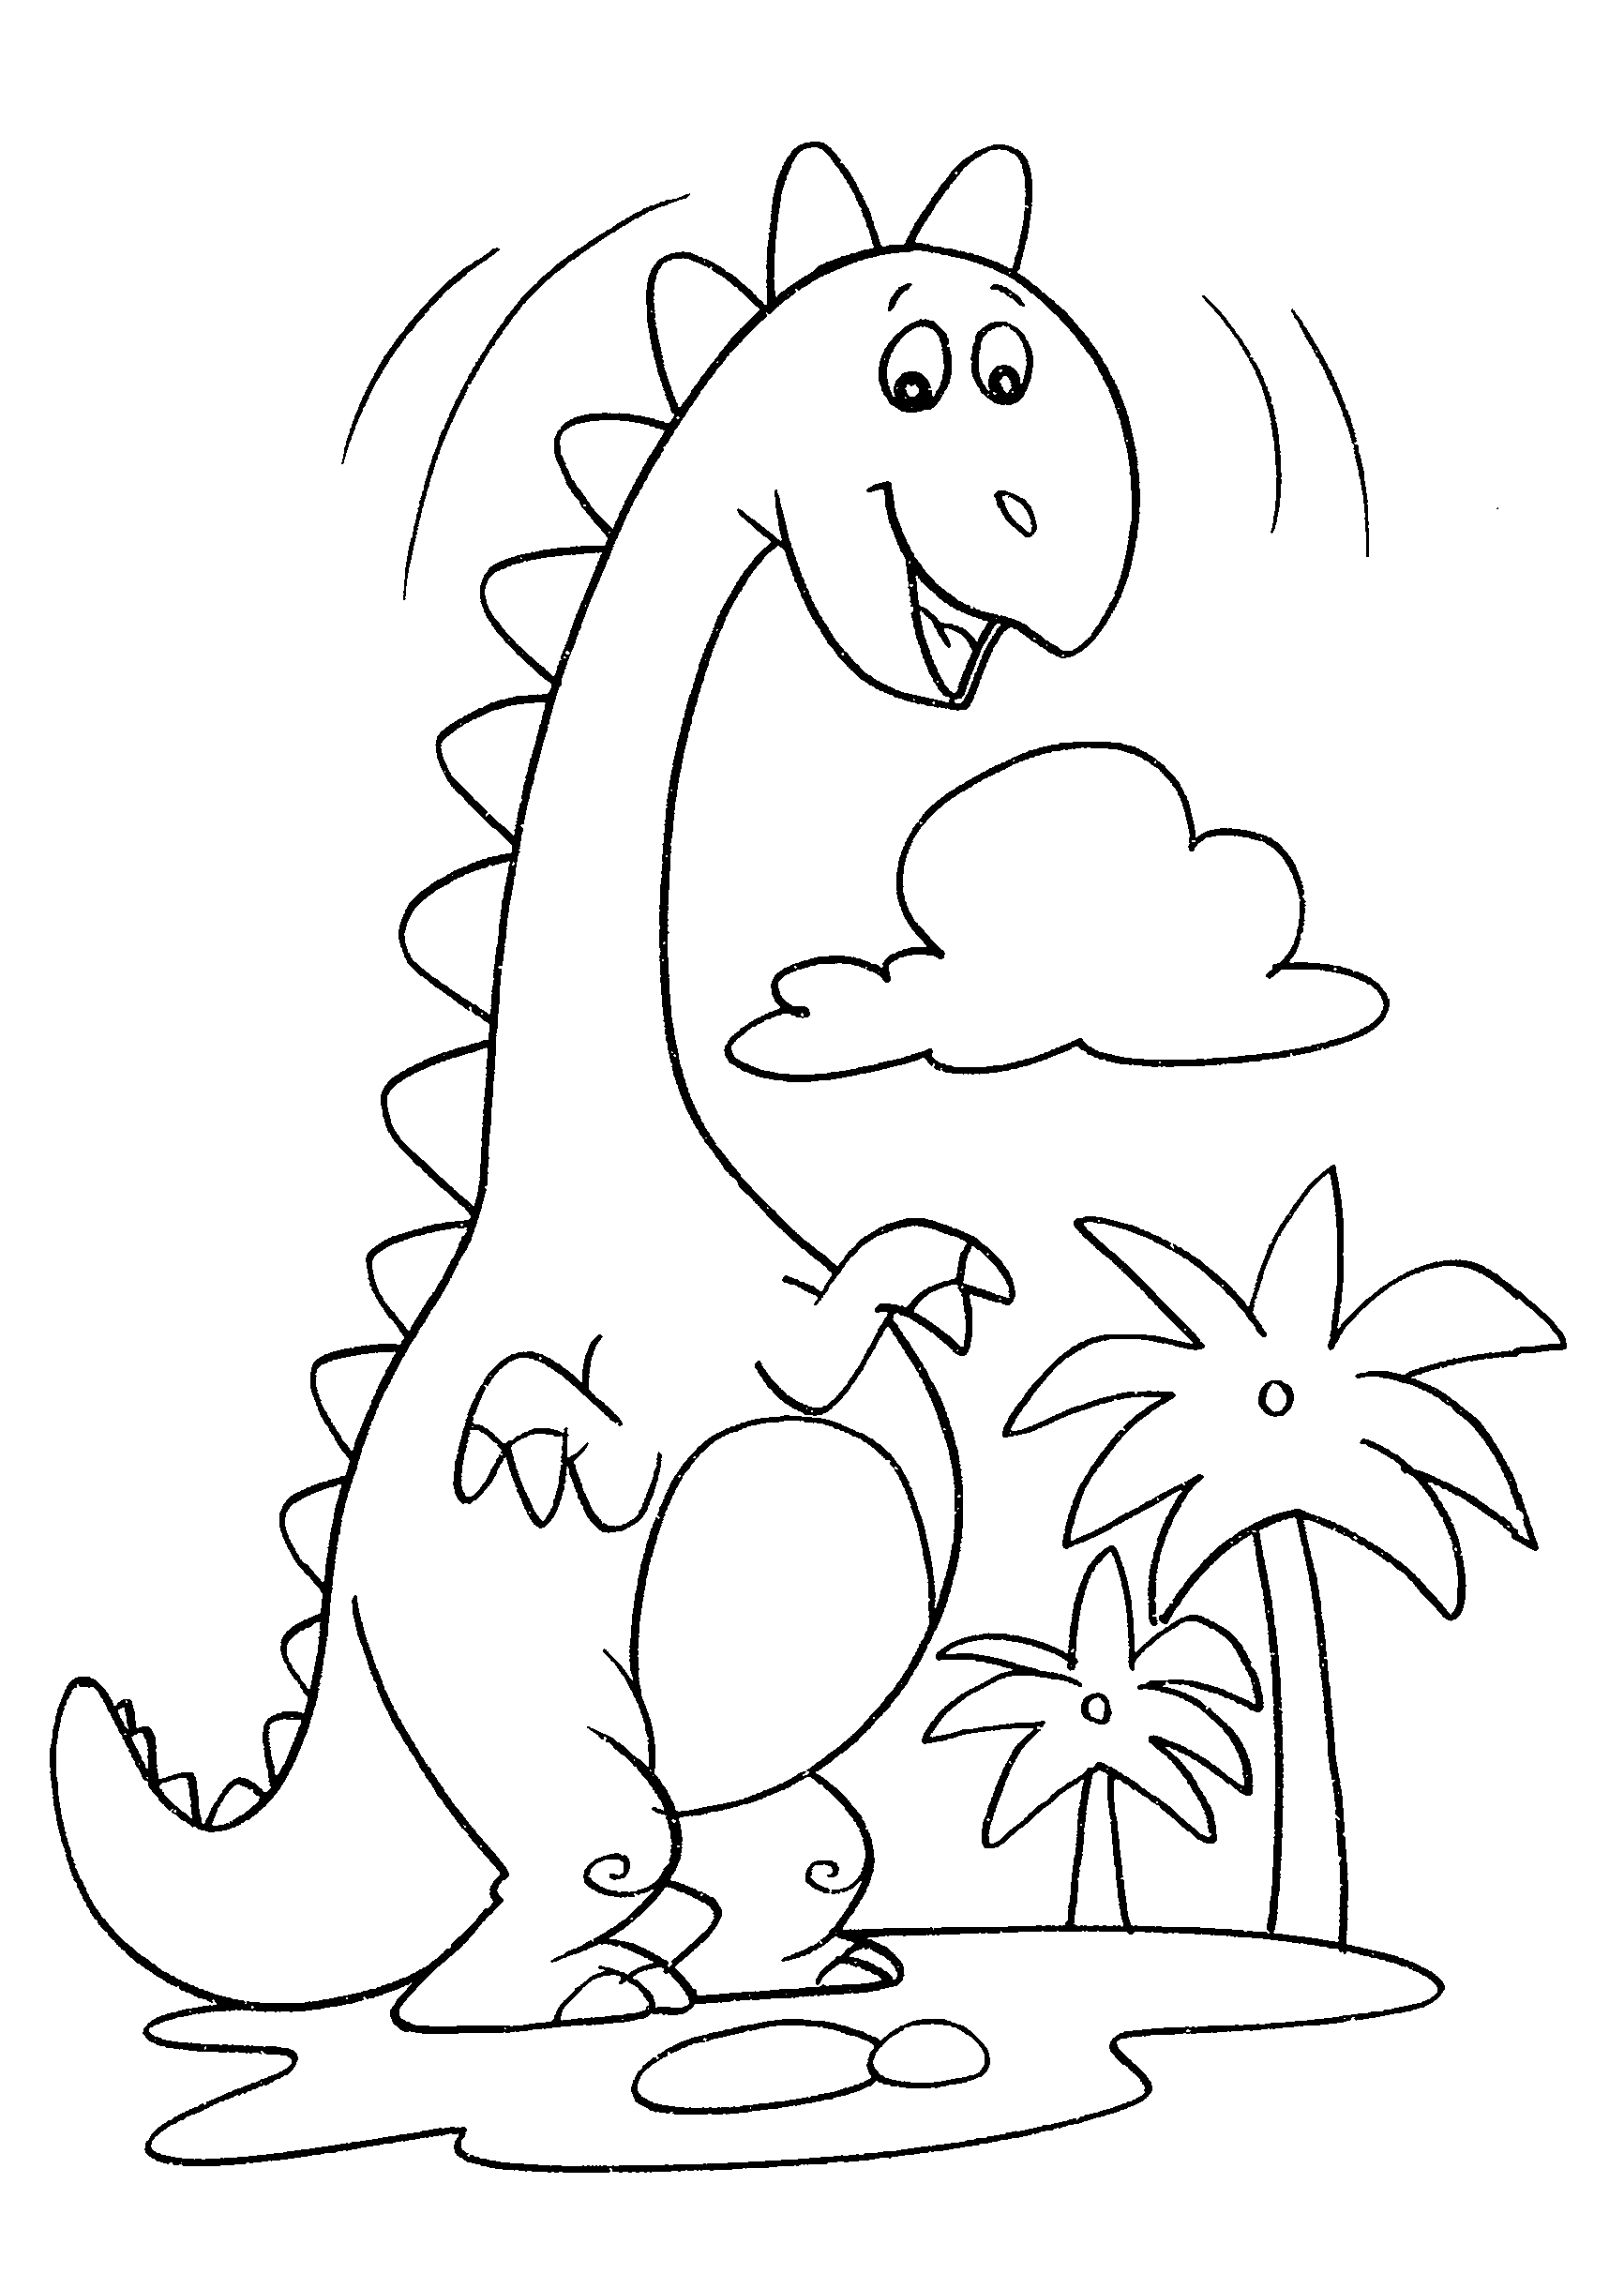 Desenho de Dinossauro pescoço longo